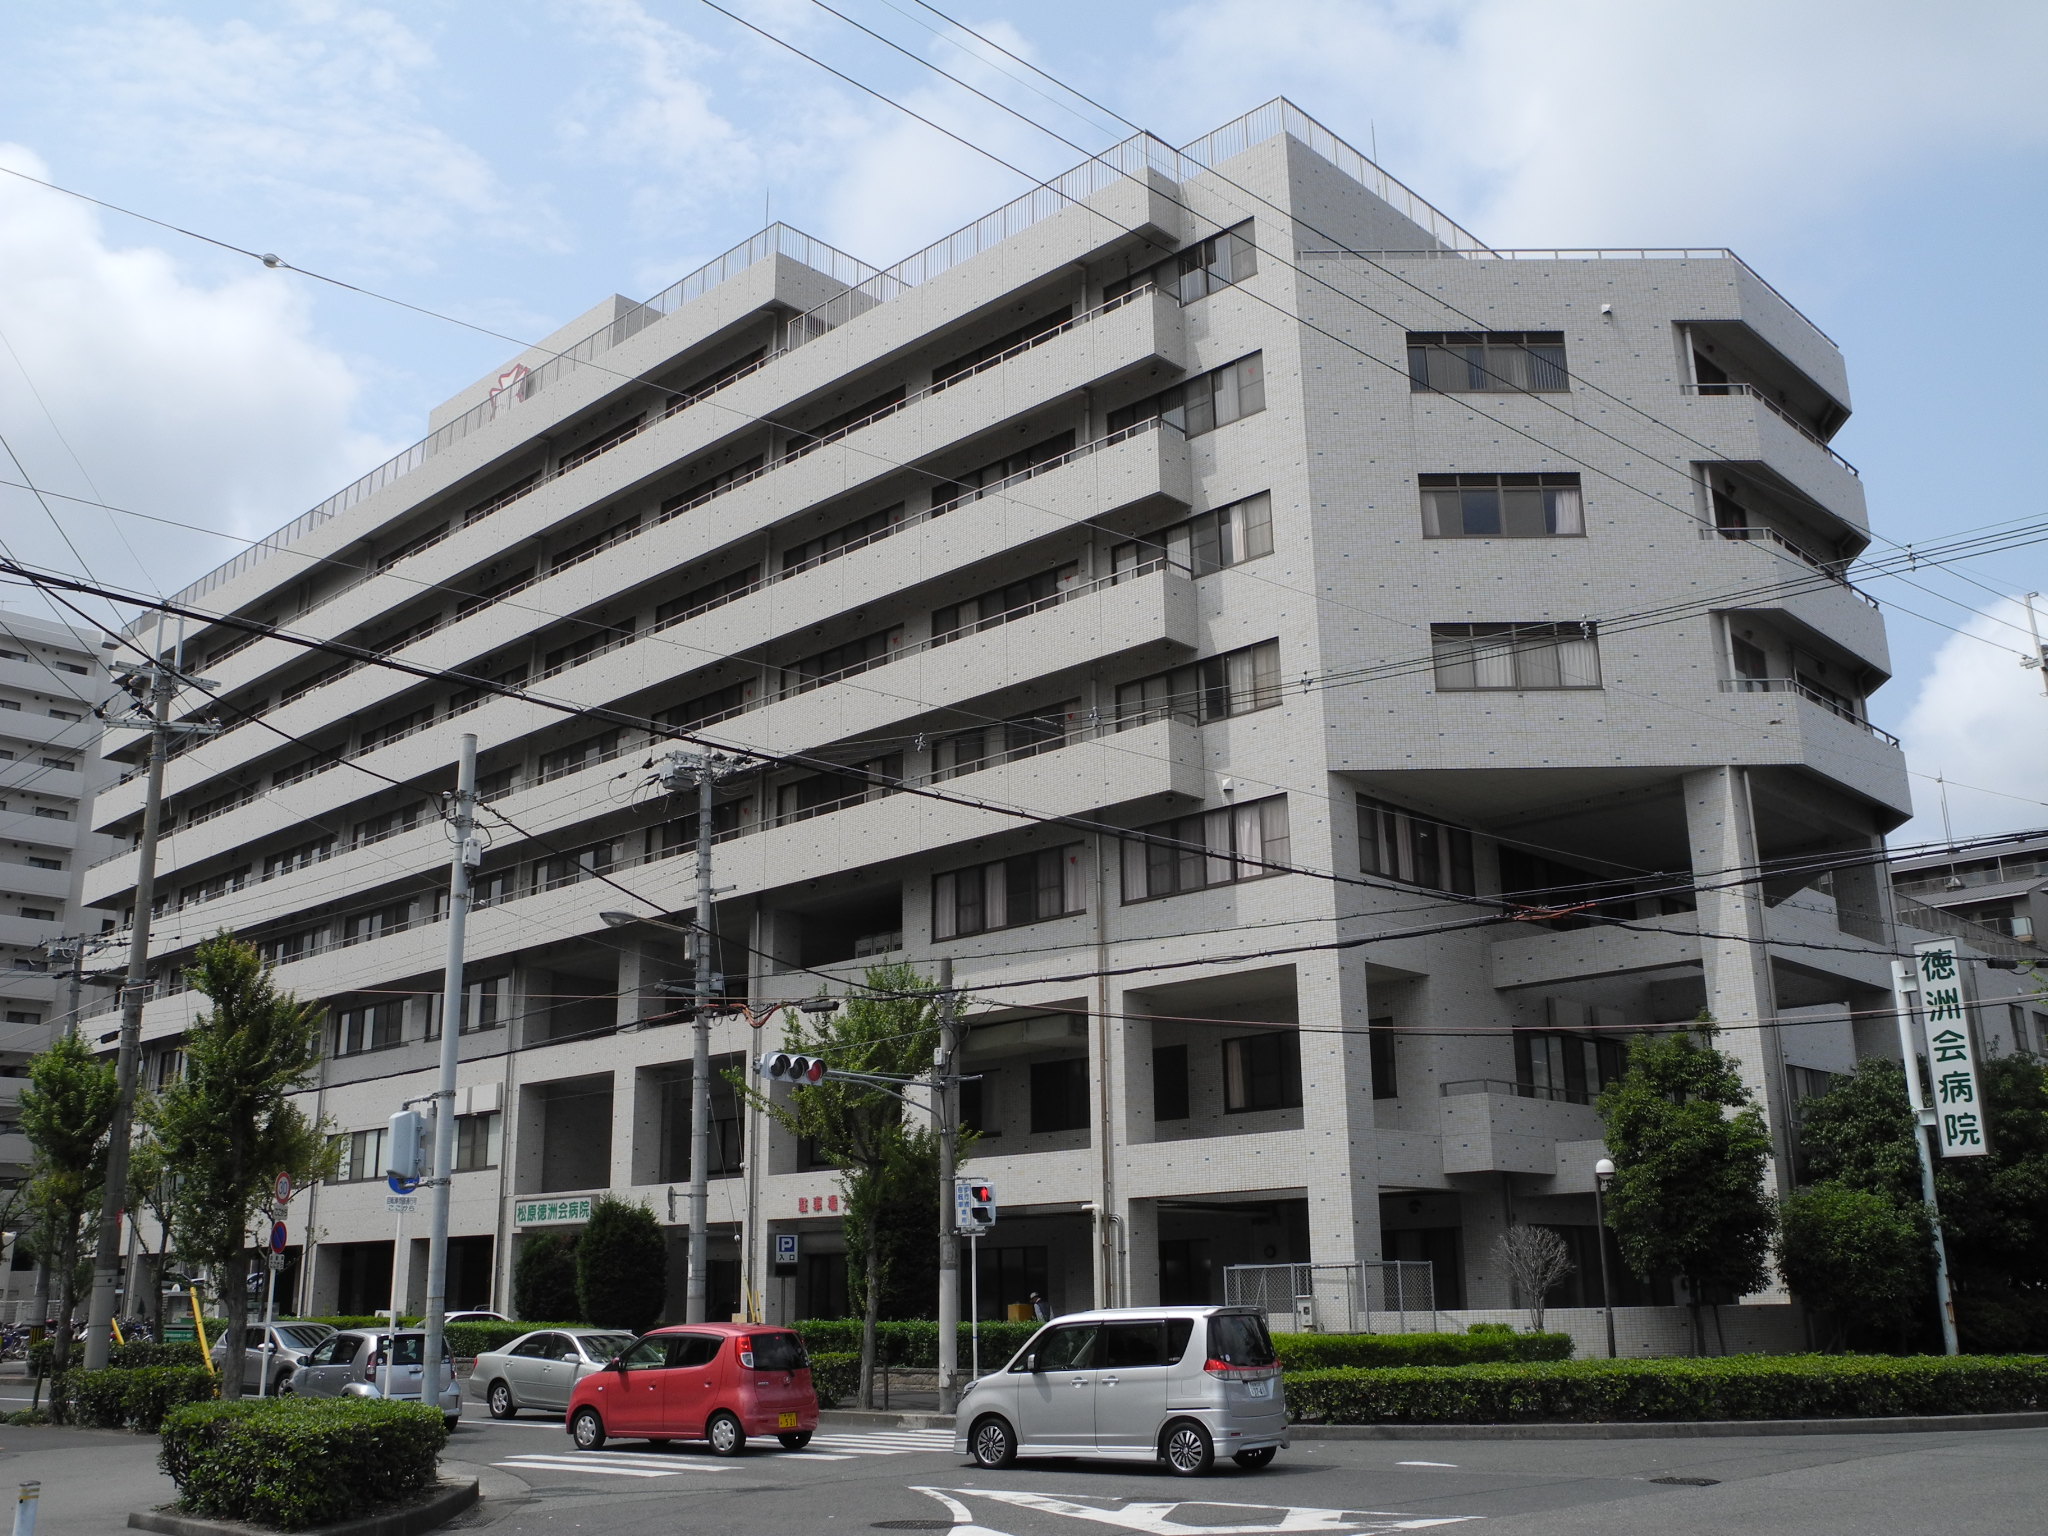 Hospital. 971m to the medical law virtue Zhuzhou Board Matsubara Tokushu Board Hospital (Hospital)